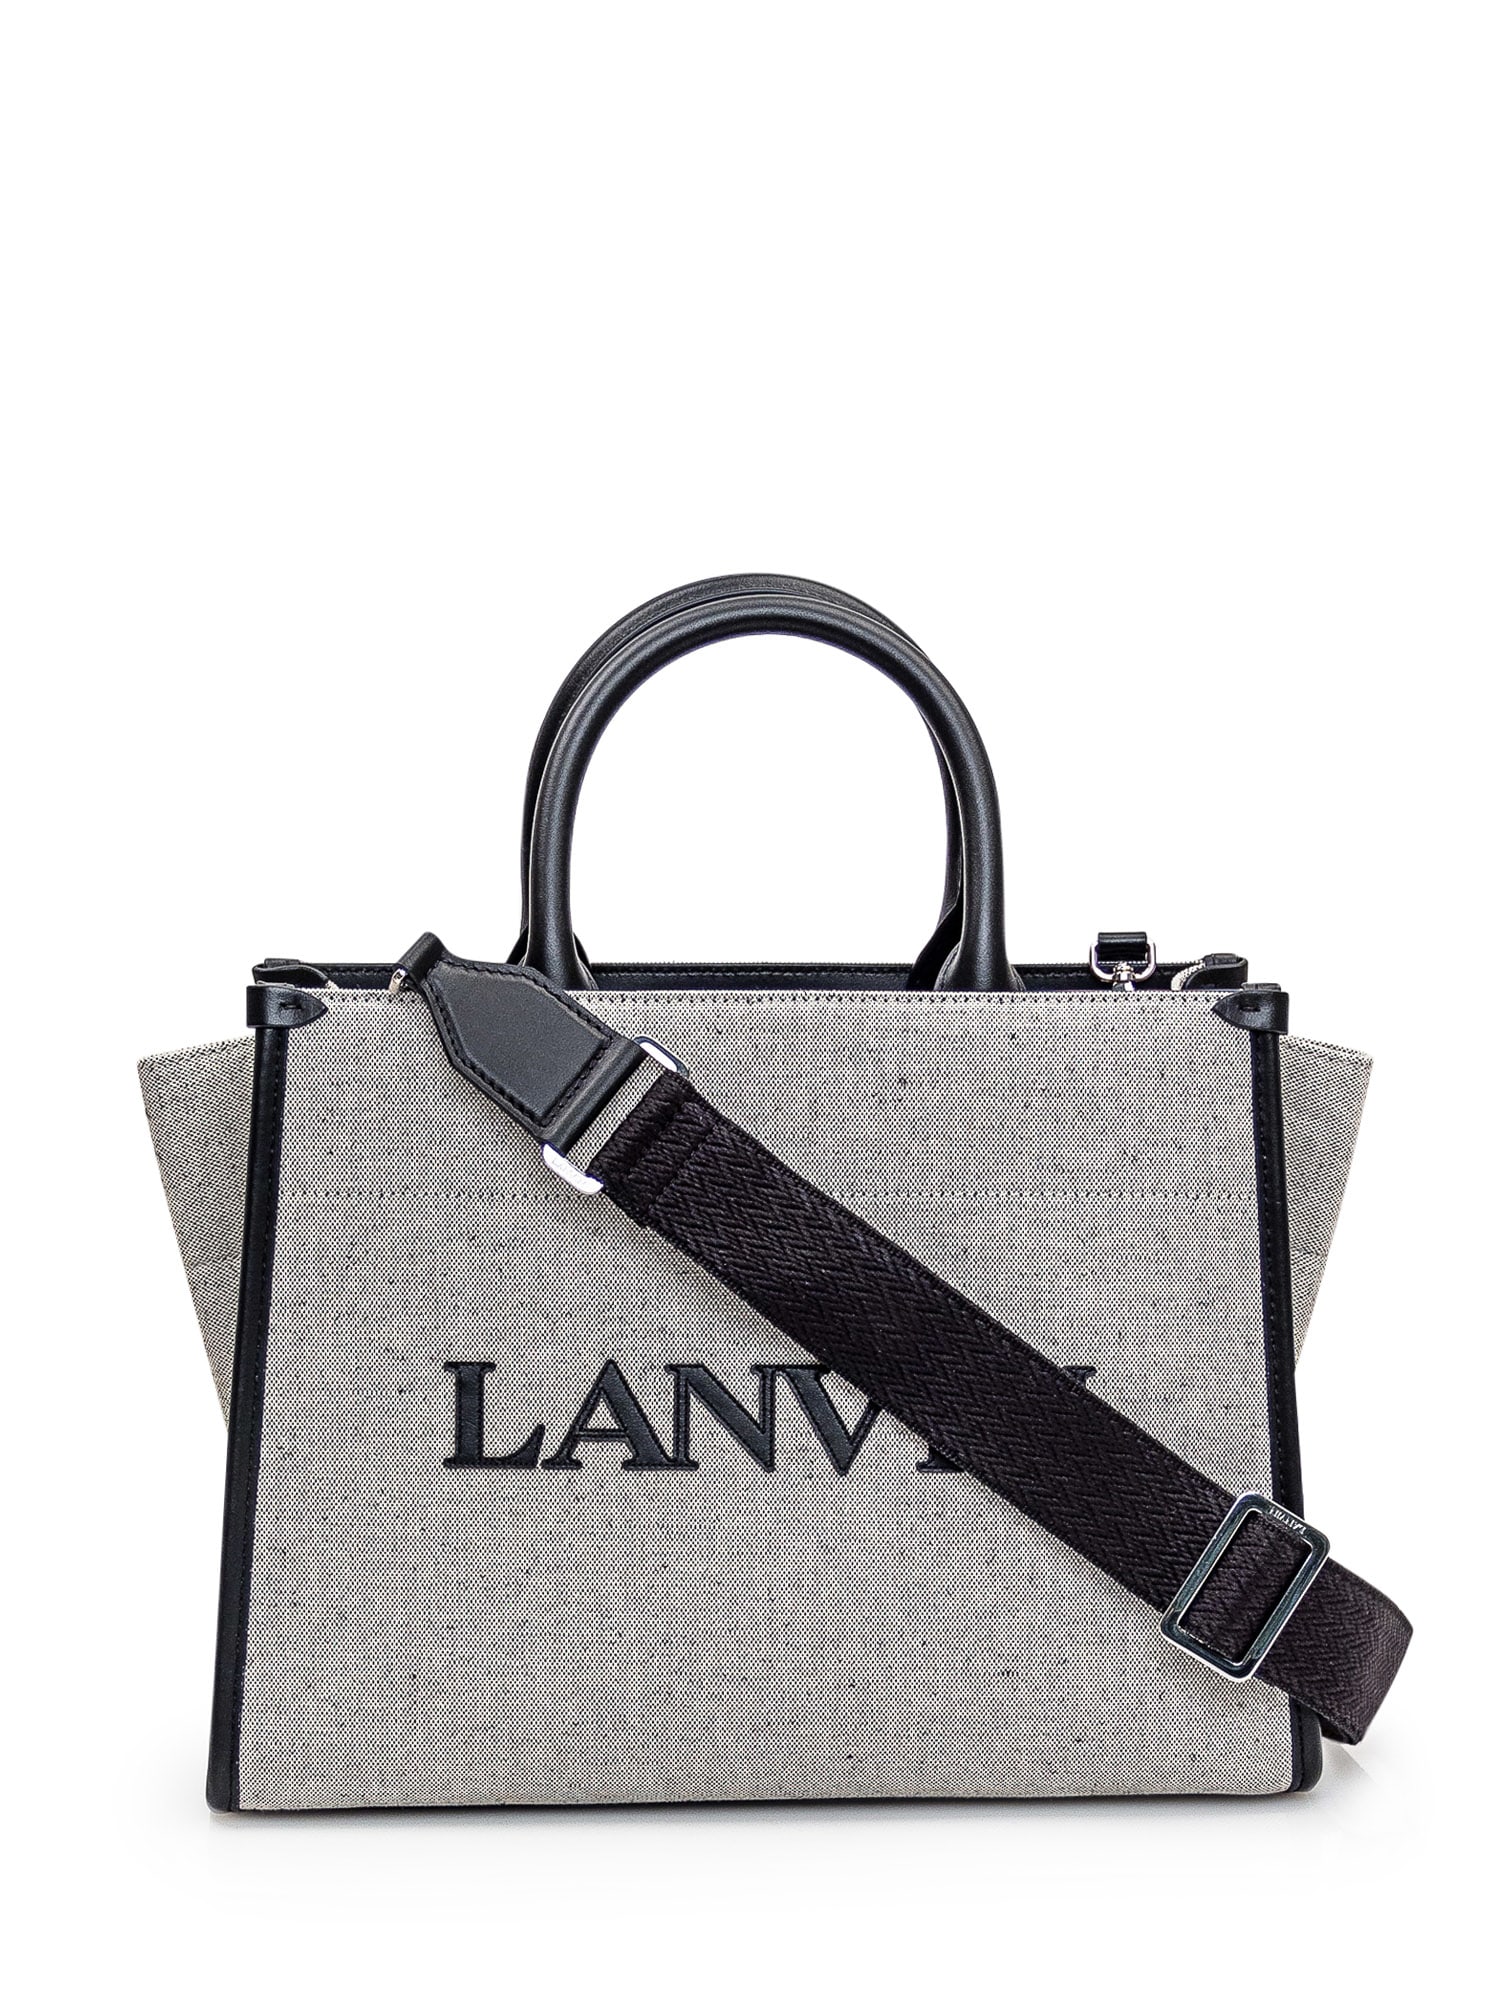 Shop Lanvin Tote Bag In Beige/black